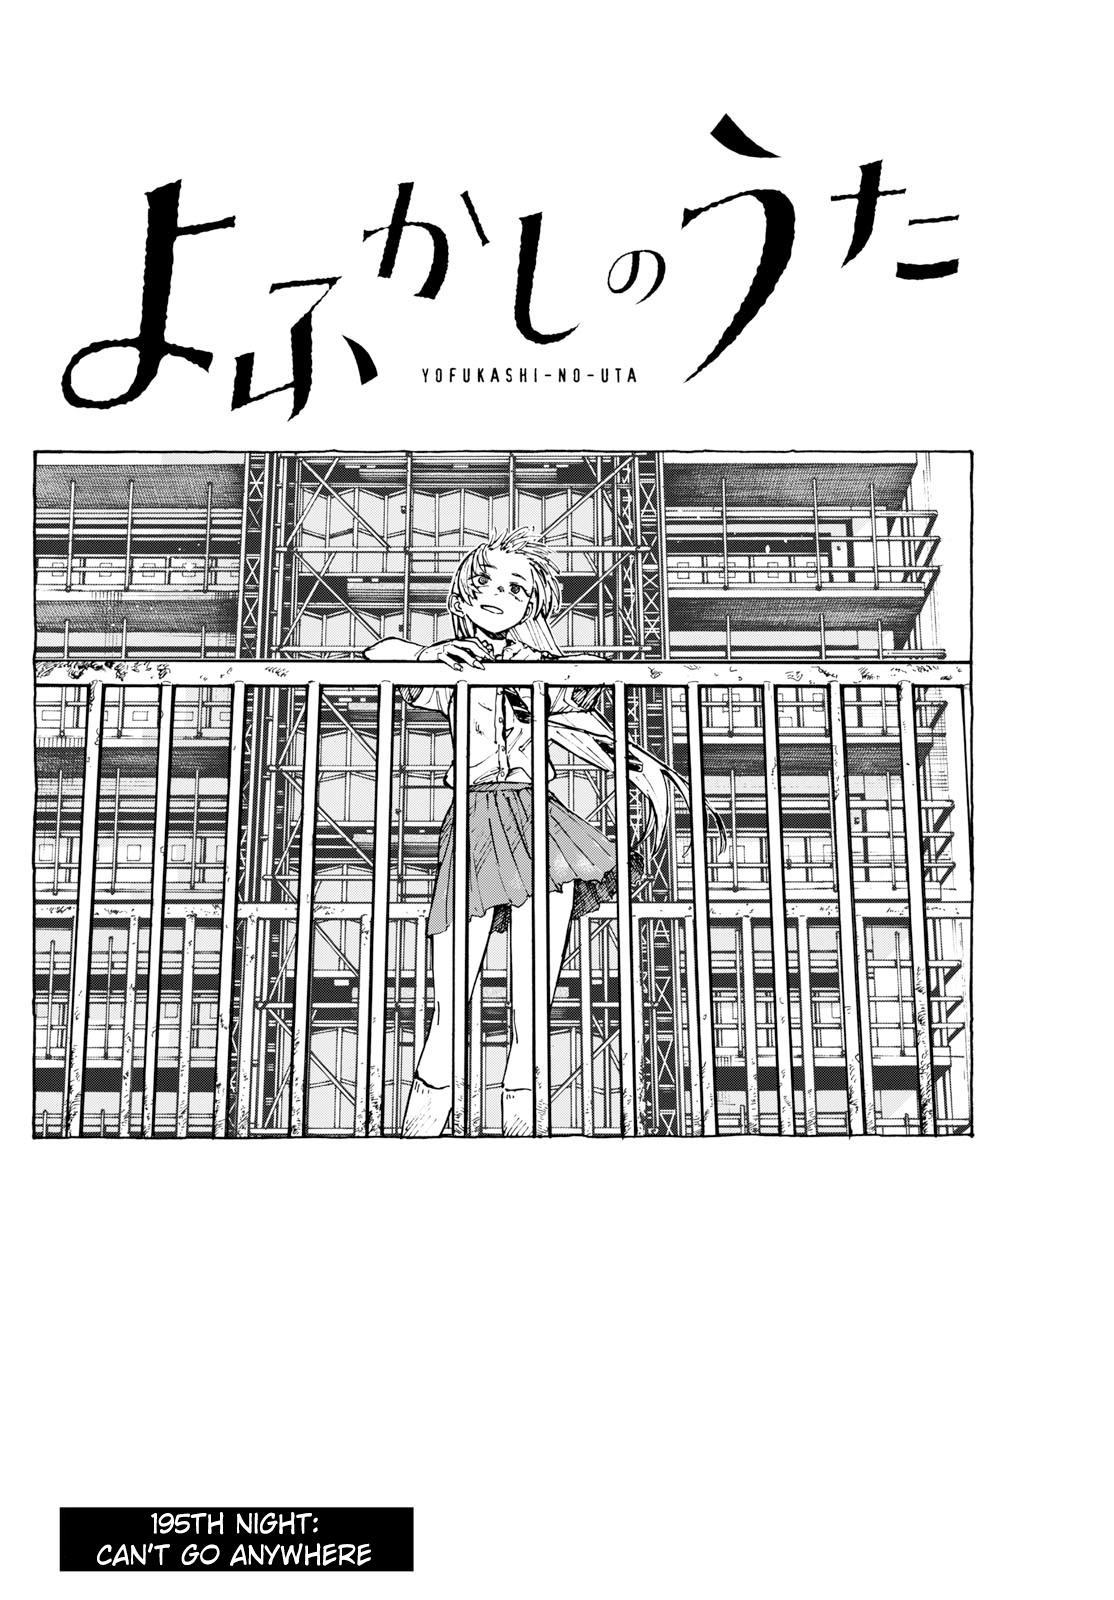 Yofukashi no Uta Vol.9 Ch.188 Page 2 - Mangago